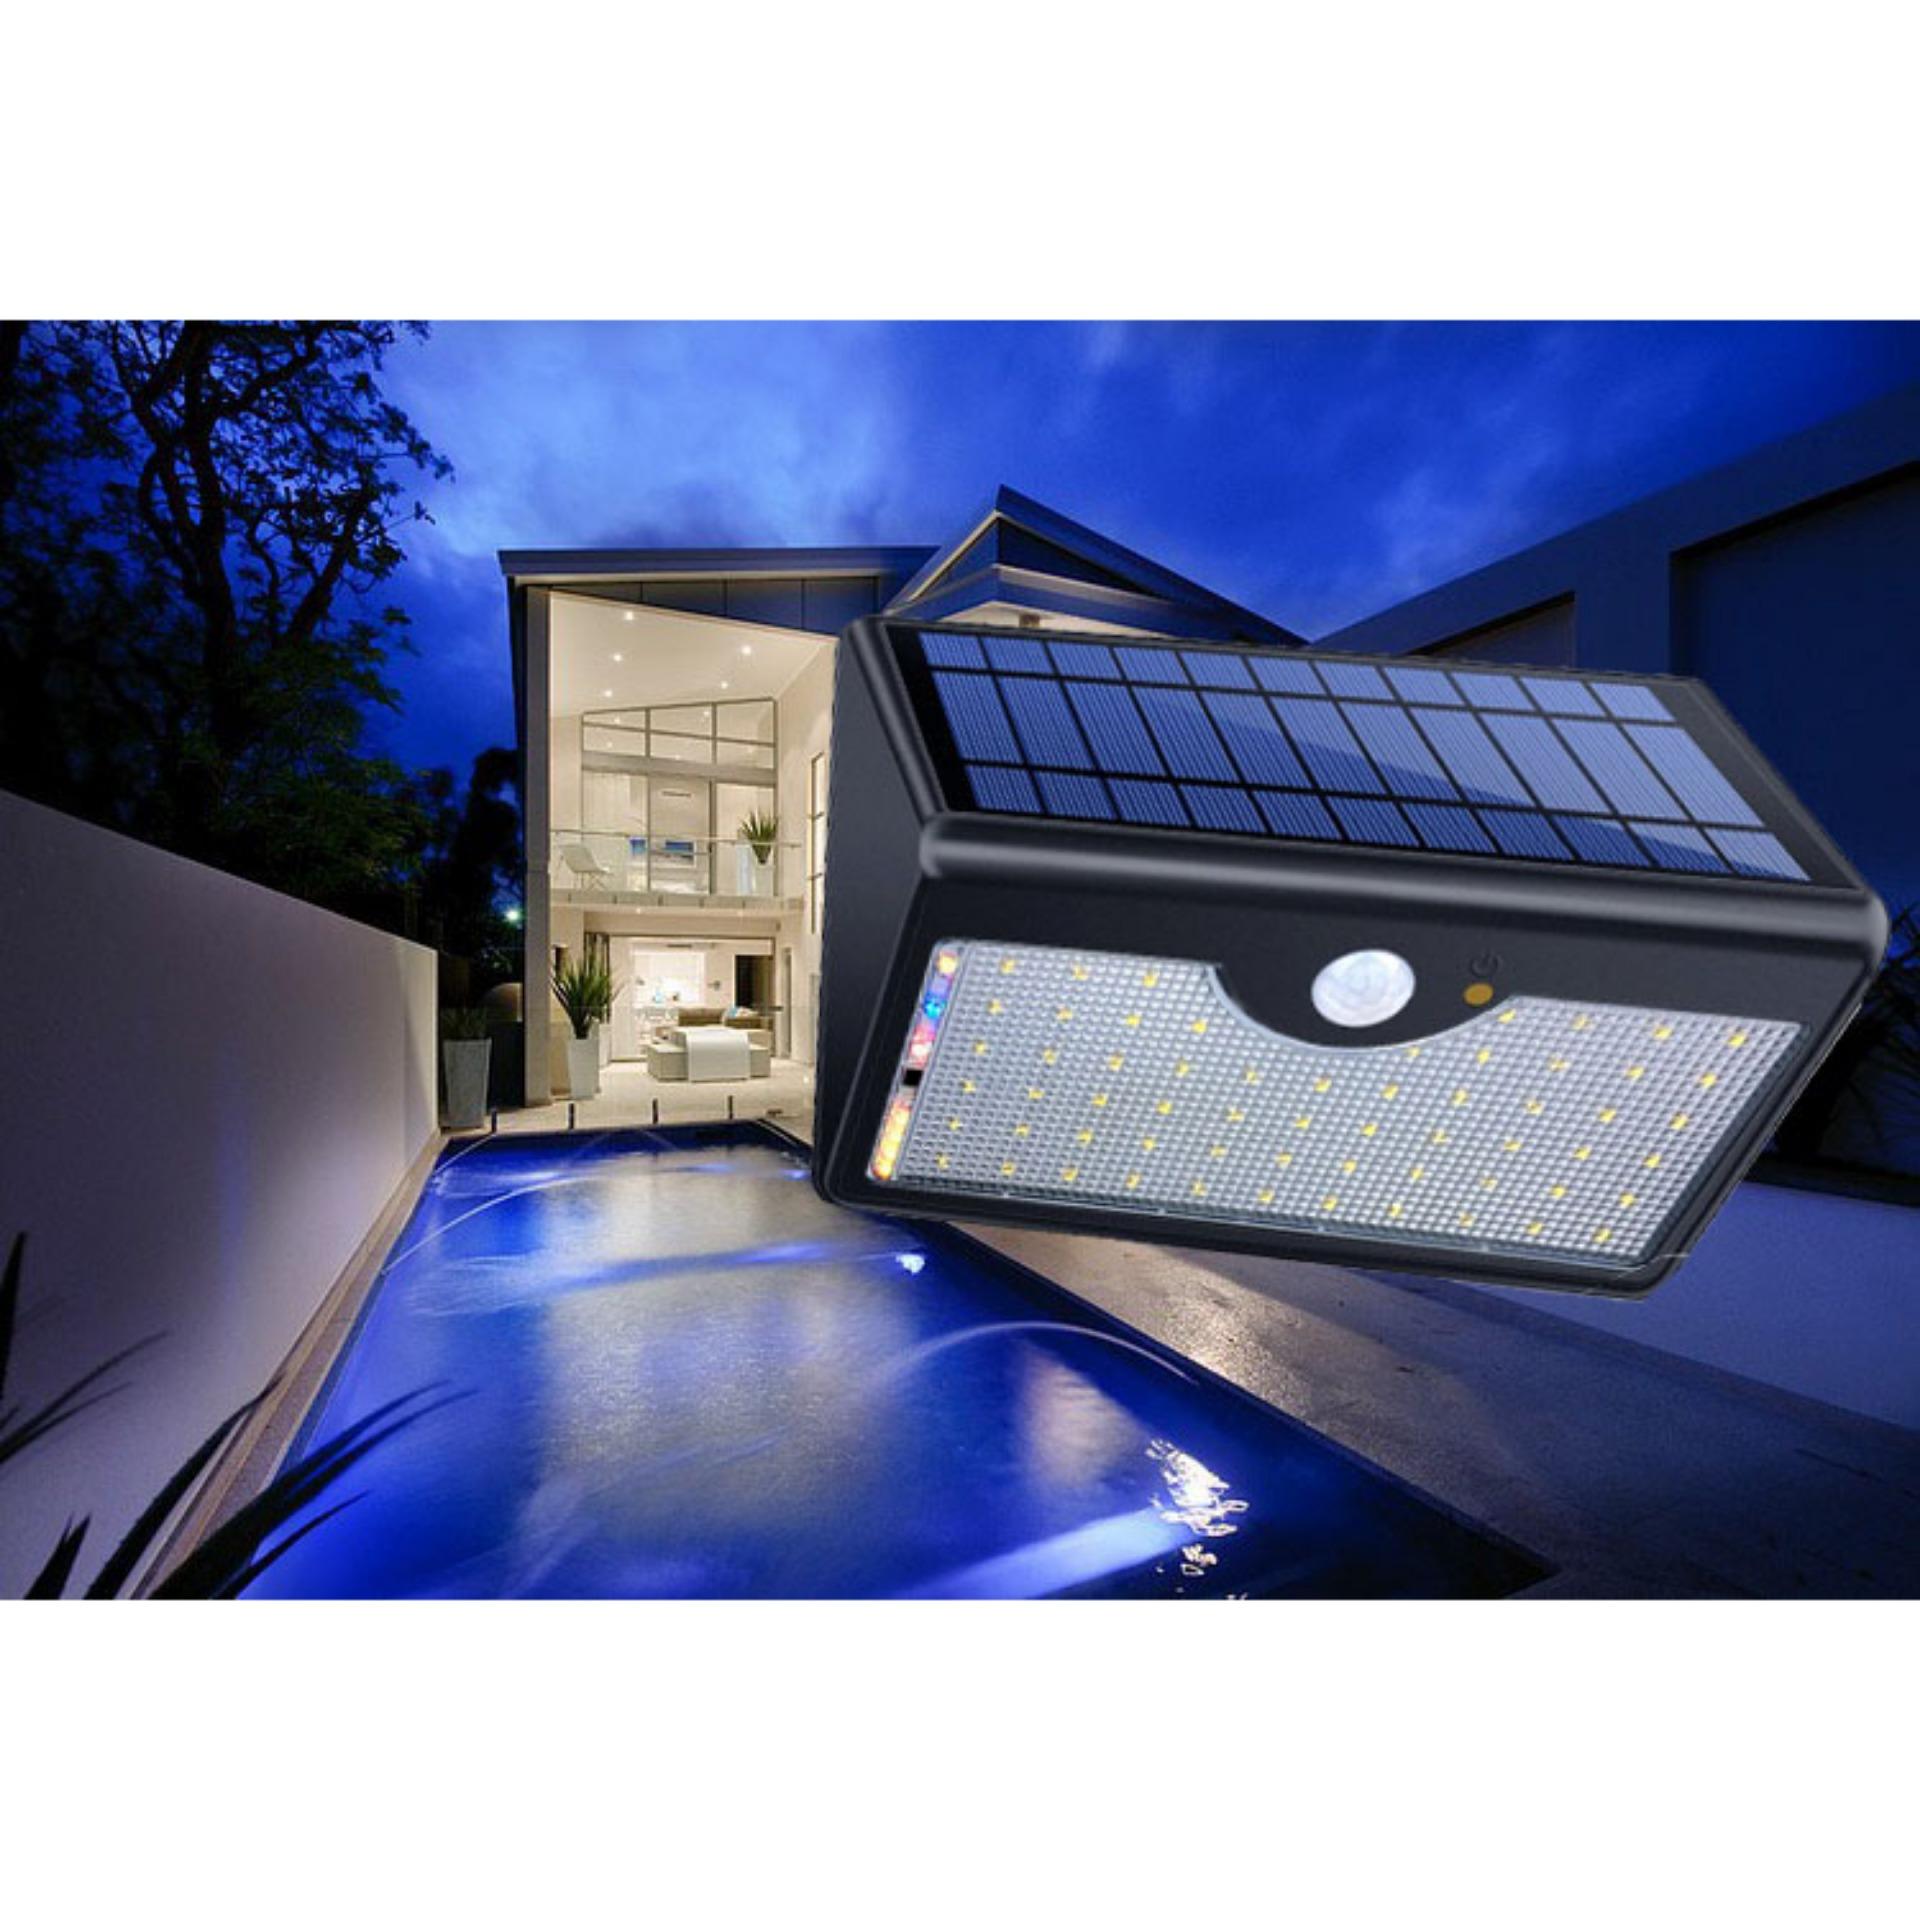 Đèn Ngoài Trời, Cảm biến thông minh OM-54, Đèn led siêu sáng sử dụng năng lượng mặt trời - Combo nguyên bộ Đèn Led + Cảm biến tắt bật Ngày  Đêm Máy lấy năng lượng điện mặt trời